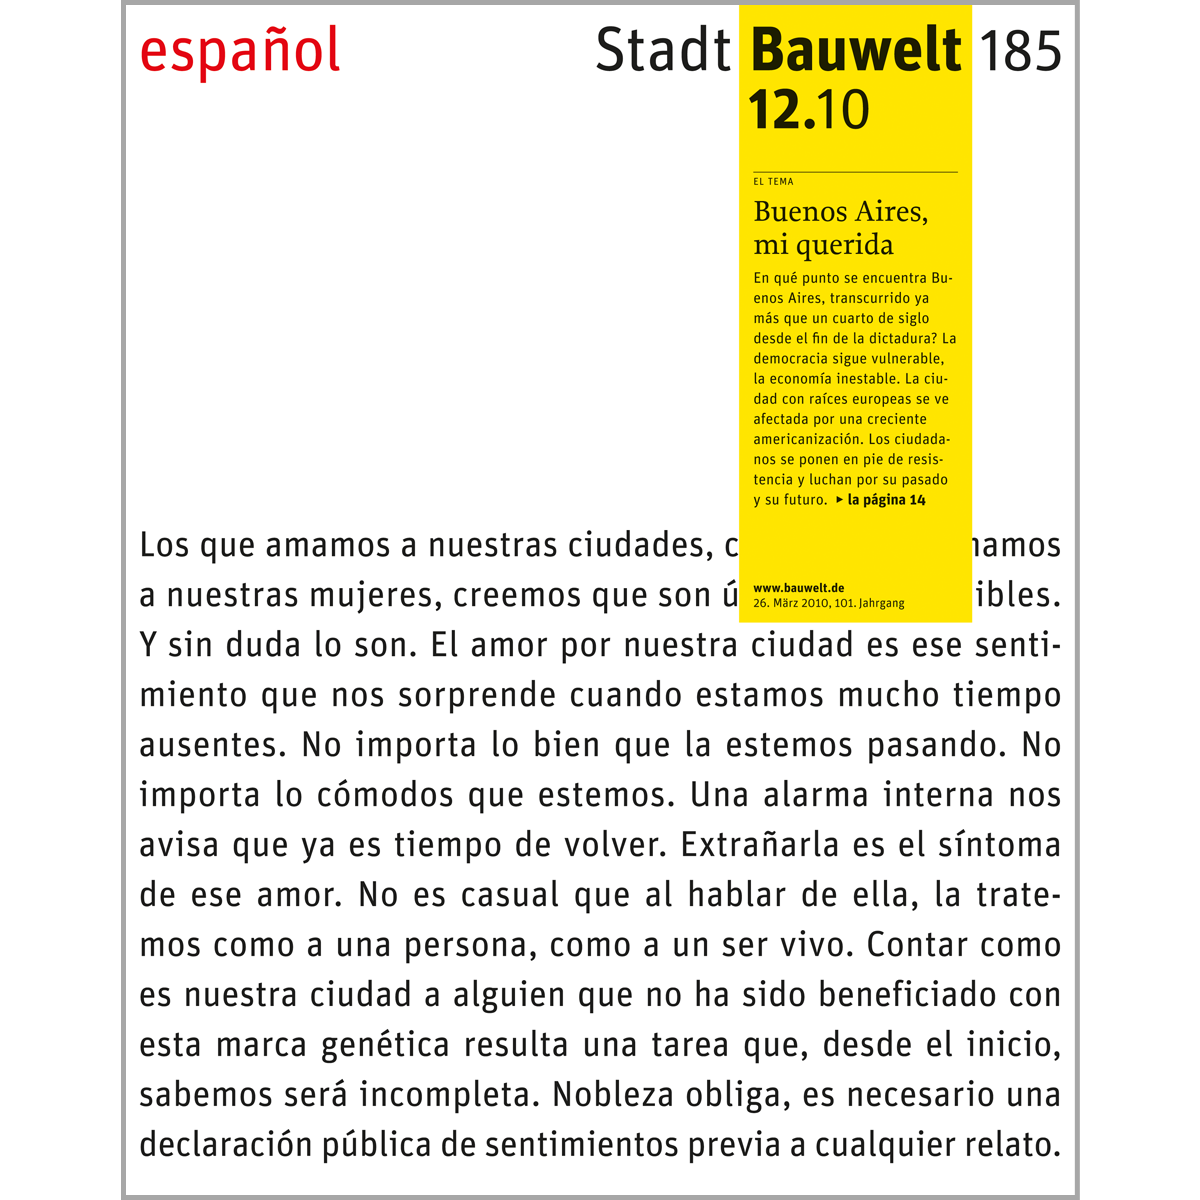 Bauwelt 185, 12.10: Buenos Aires, mi querida